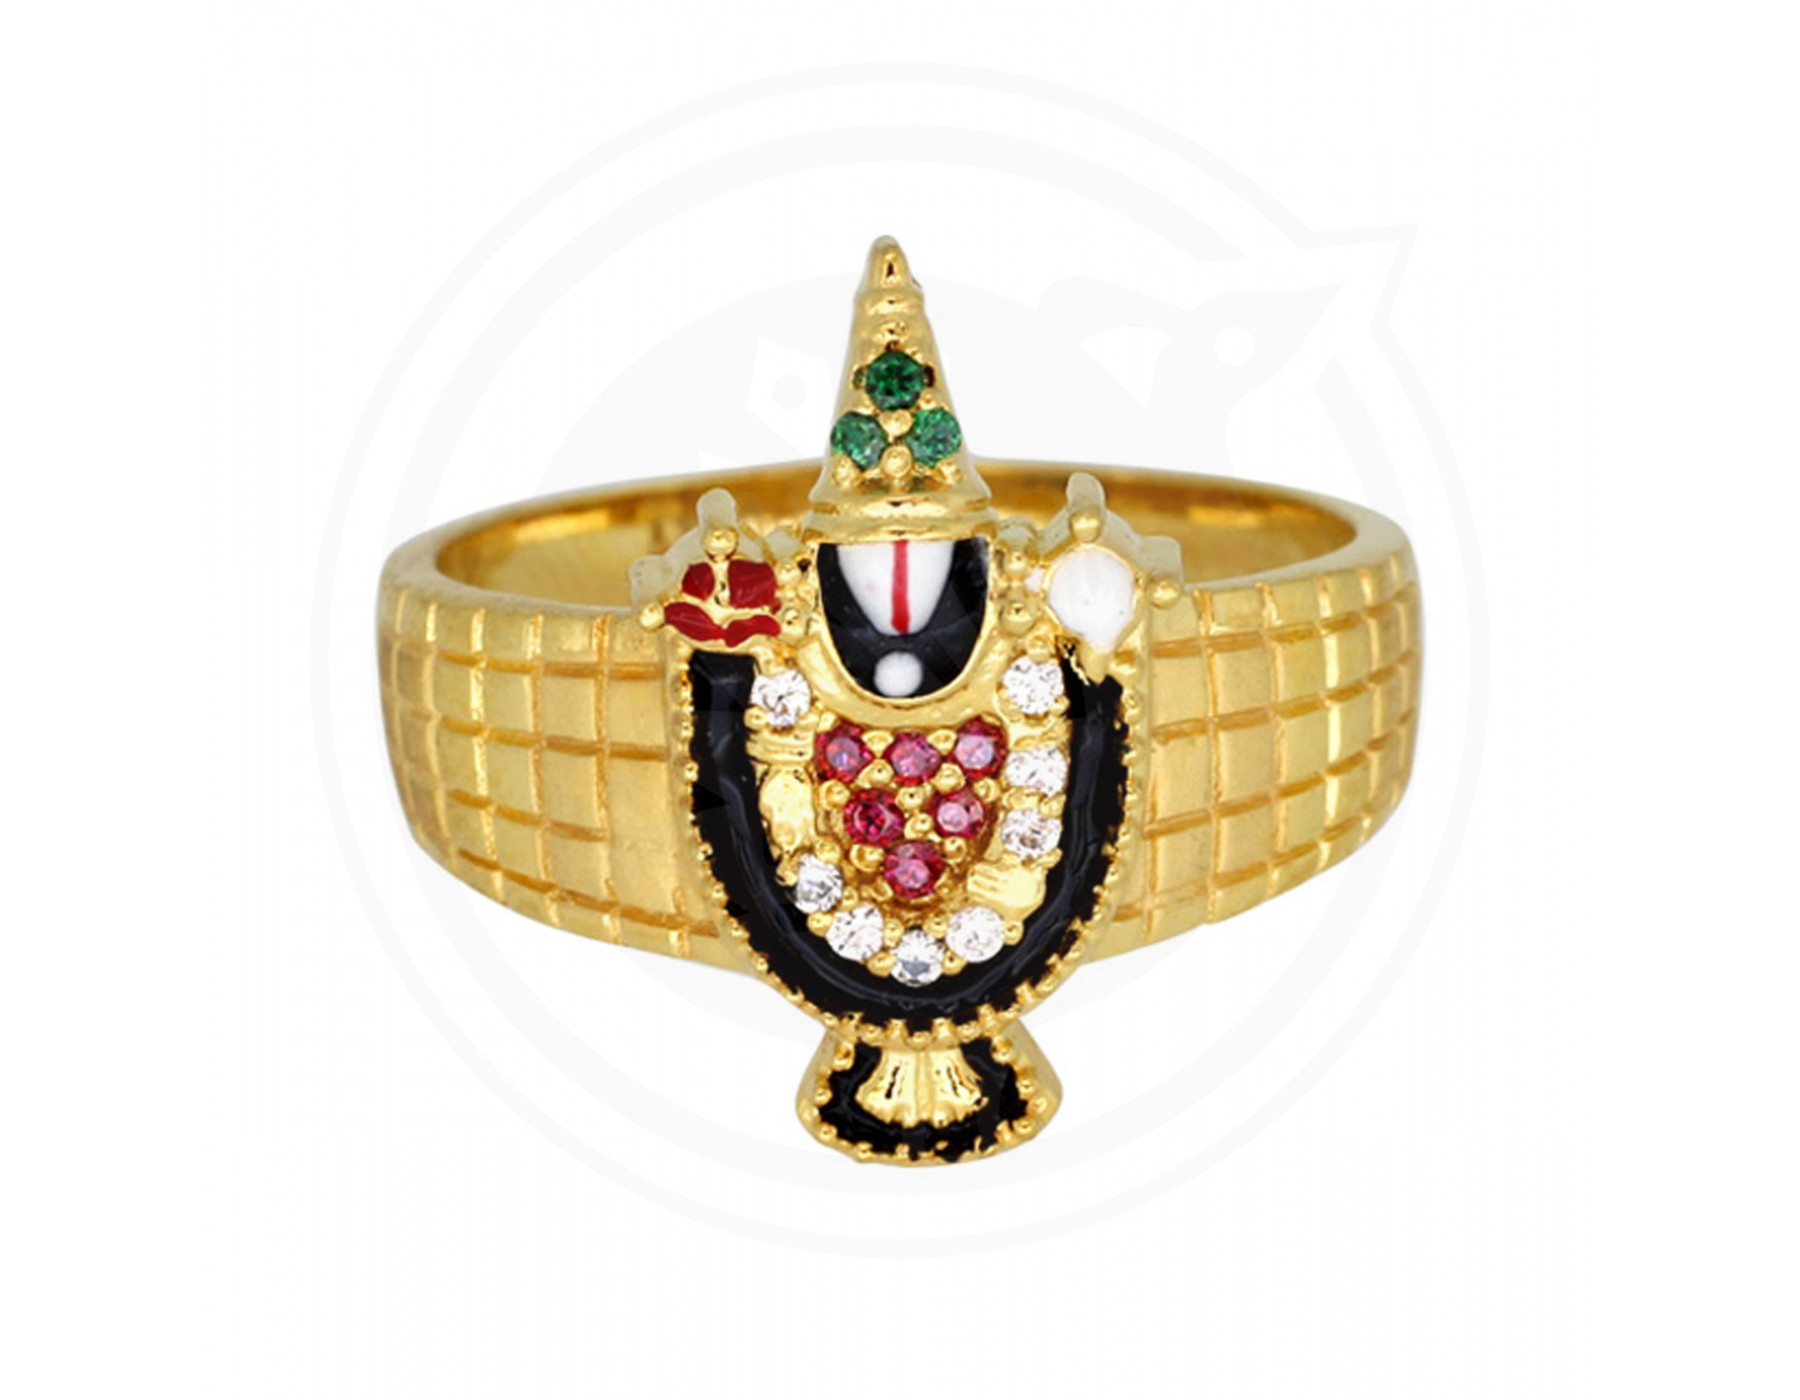 Antique 22KT Gold Balaji Ring for Men